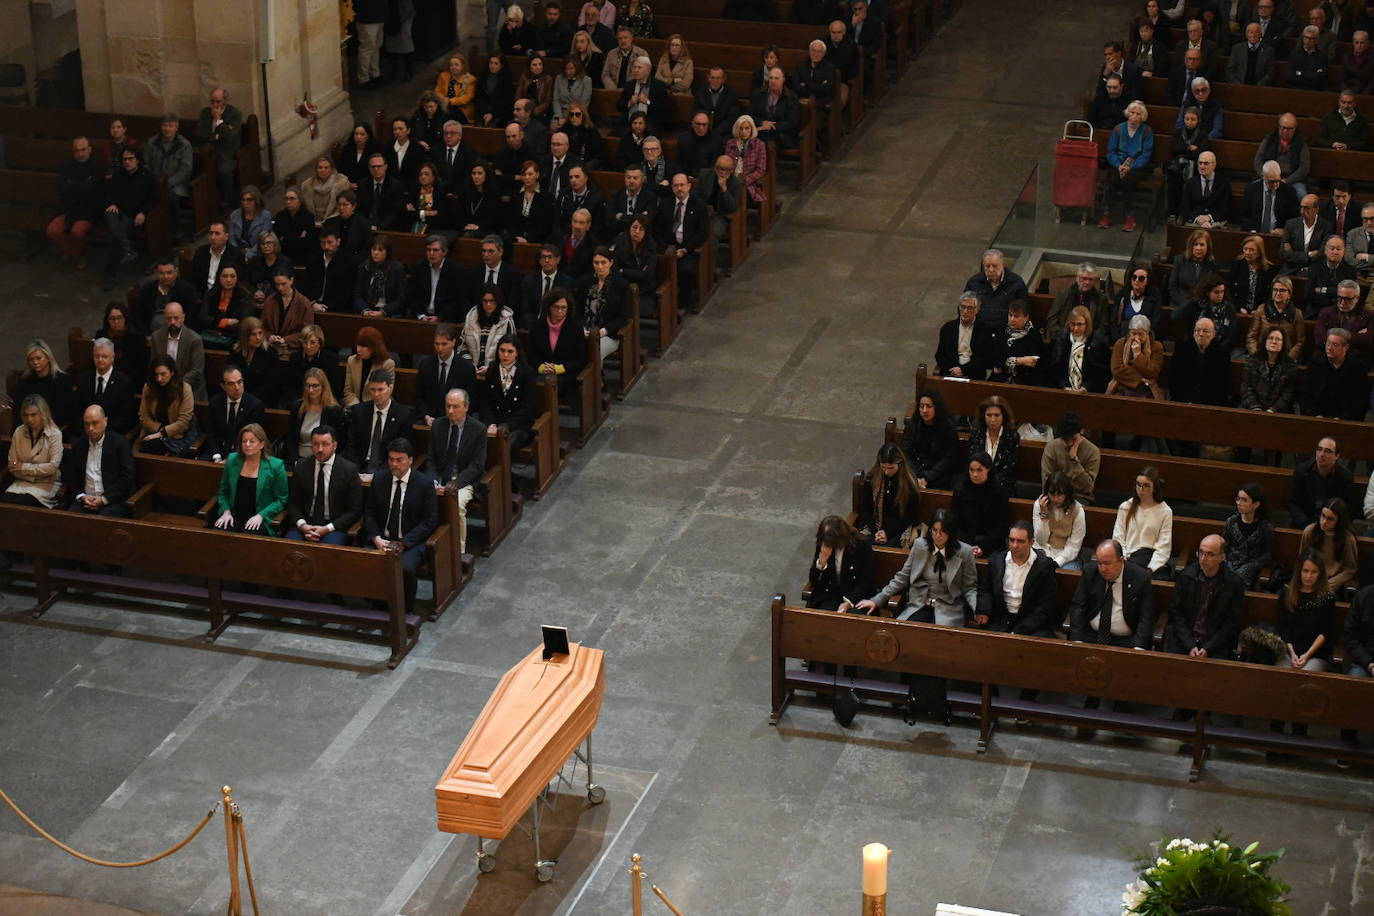 Imagen secundaria 1 - Funeral de Miguel Valor en Alicante.